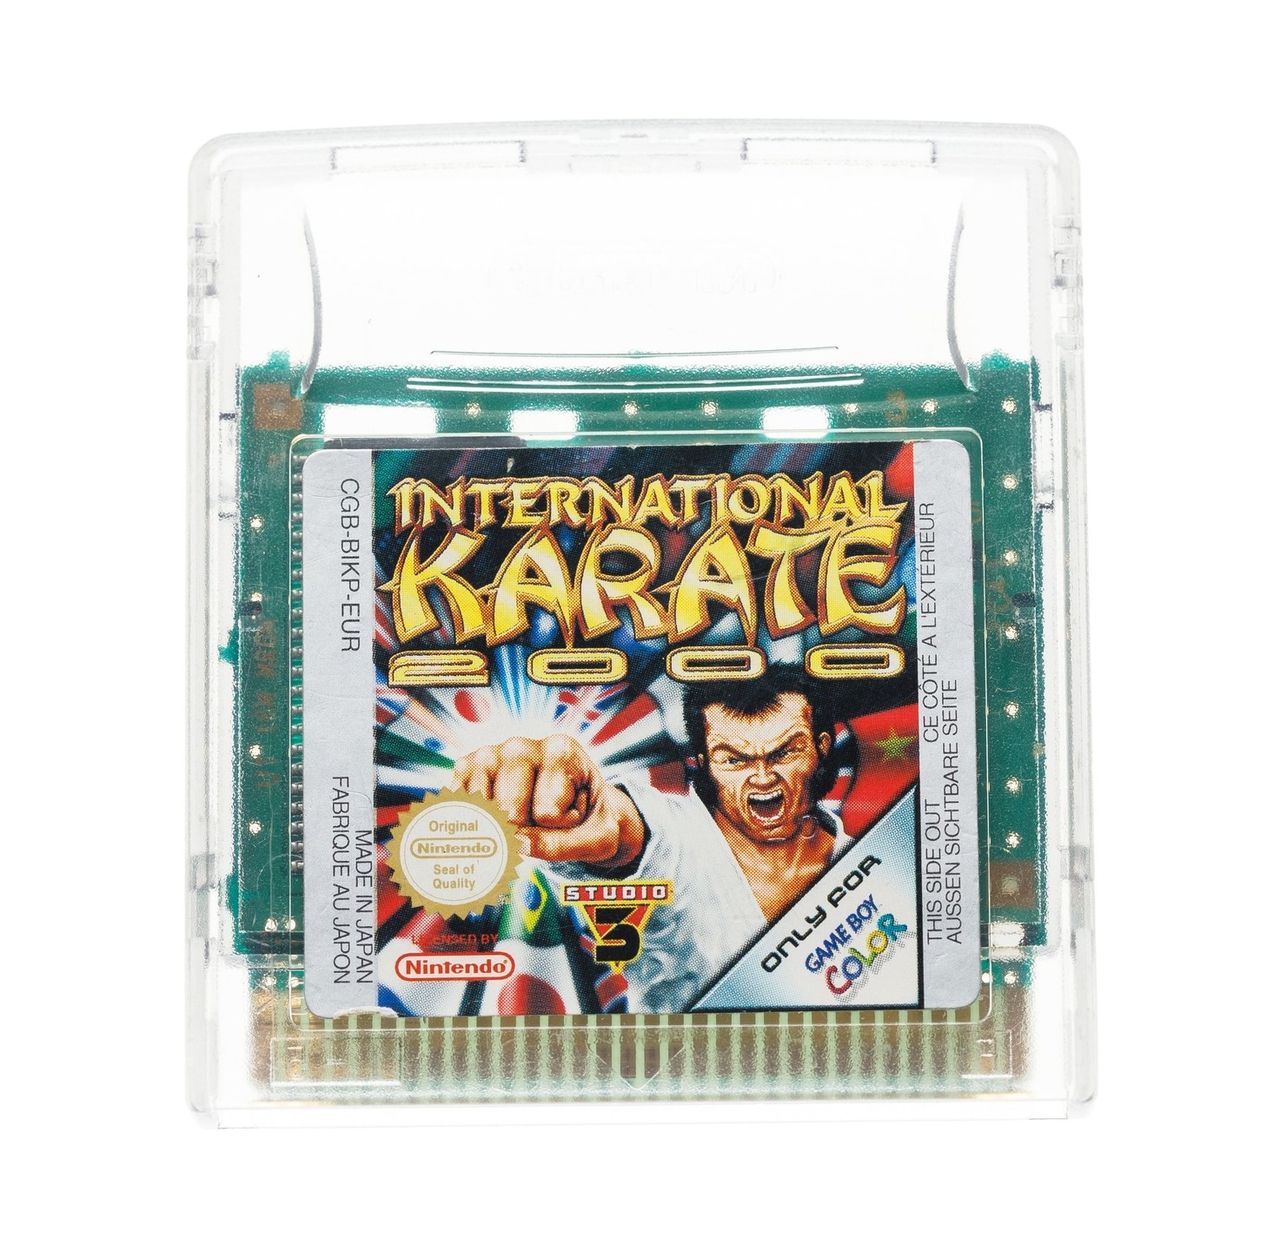 International Karate 2000 Kopen | Gameboy Color Games